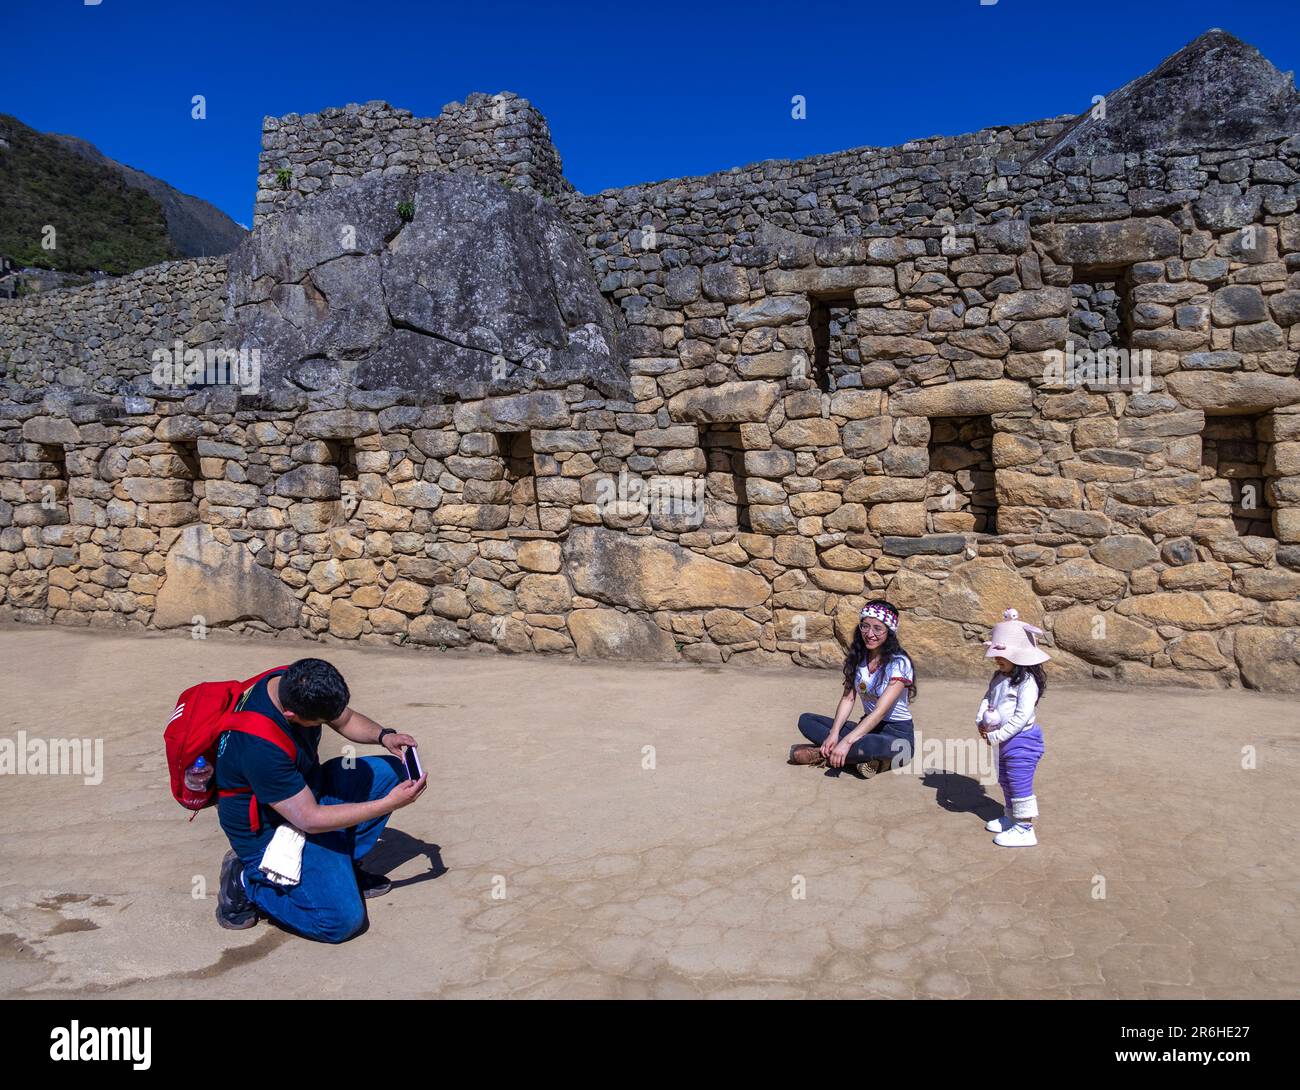 Familienvater, der Ehefrau und Tochter fotografiert, Inka-Ruinen von Machu Picchu, Peru, Südamerika Stockfoto